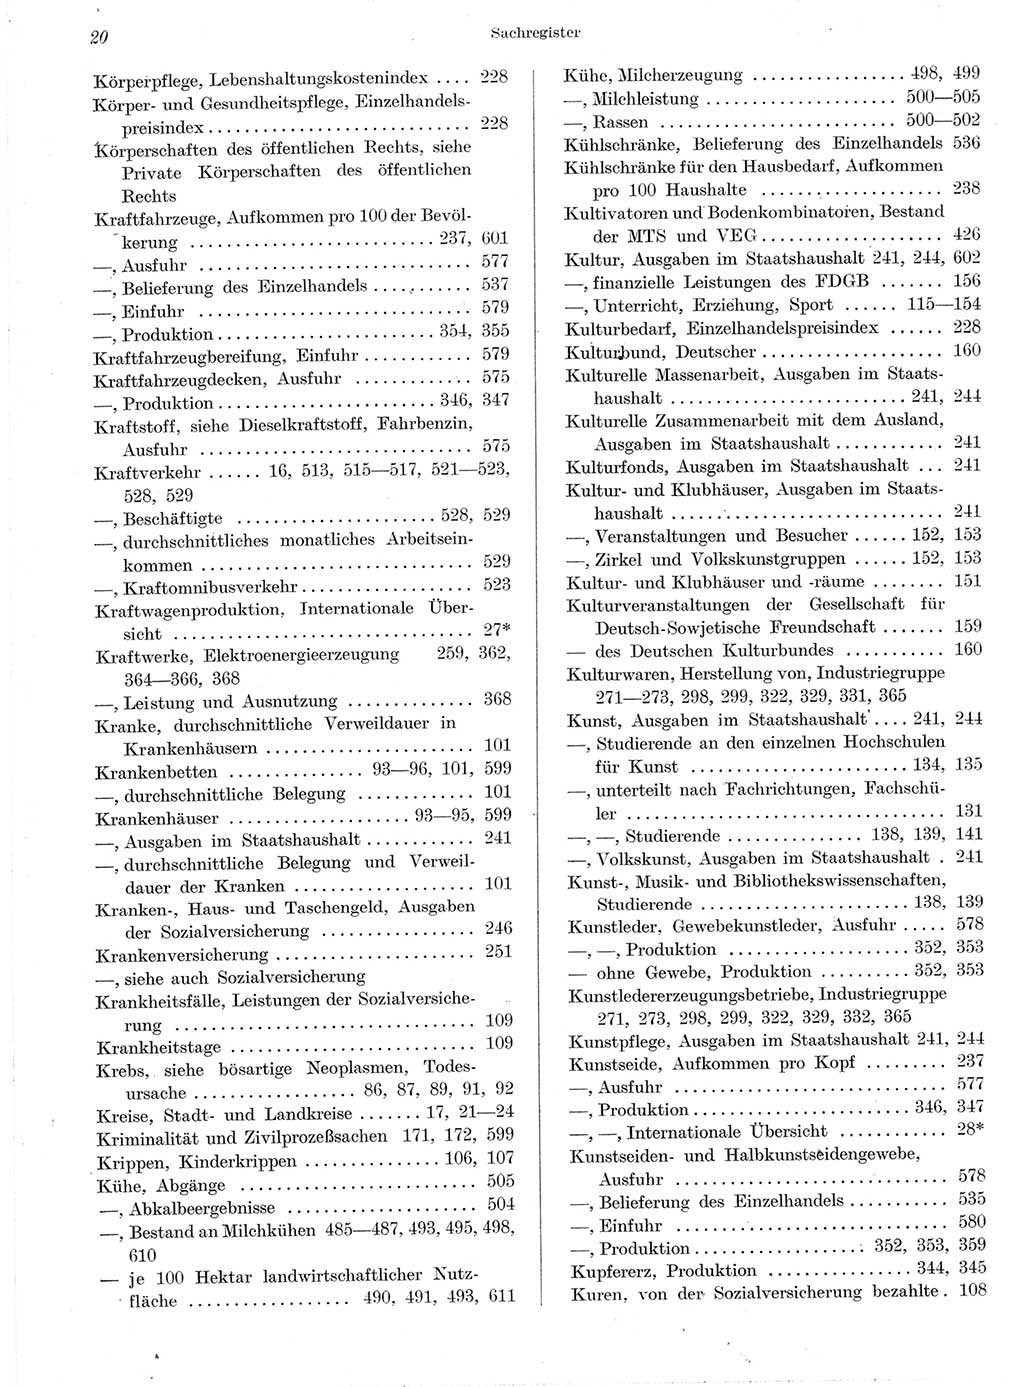 Statistisches Jahrbuch der Deutschen Demokratischen Republik (DDR) 1959, Seite 20 (Stat. Jb. DDR 1959, S. 20)